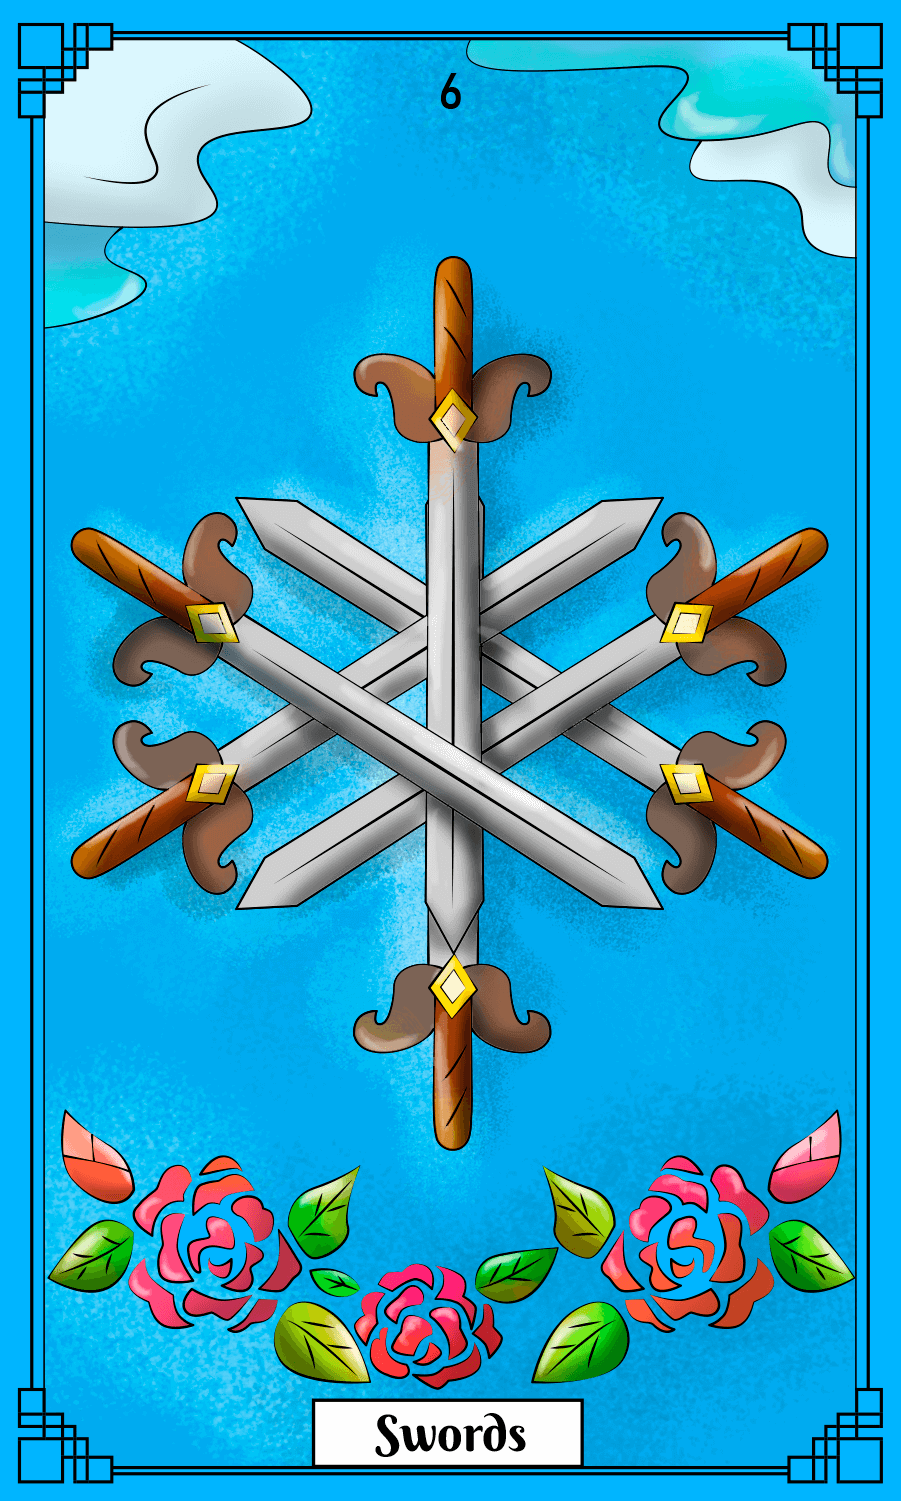 6 of Swords card